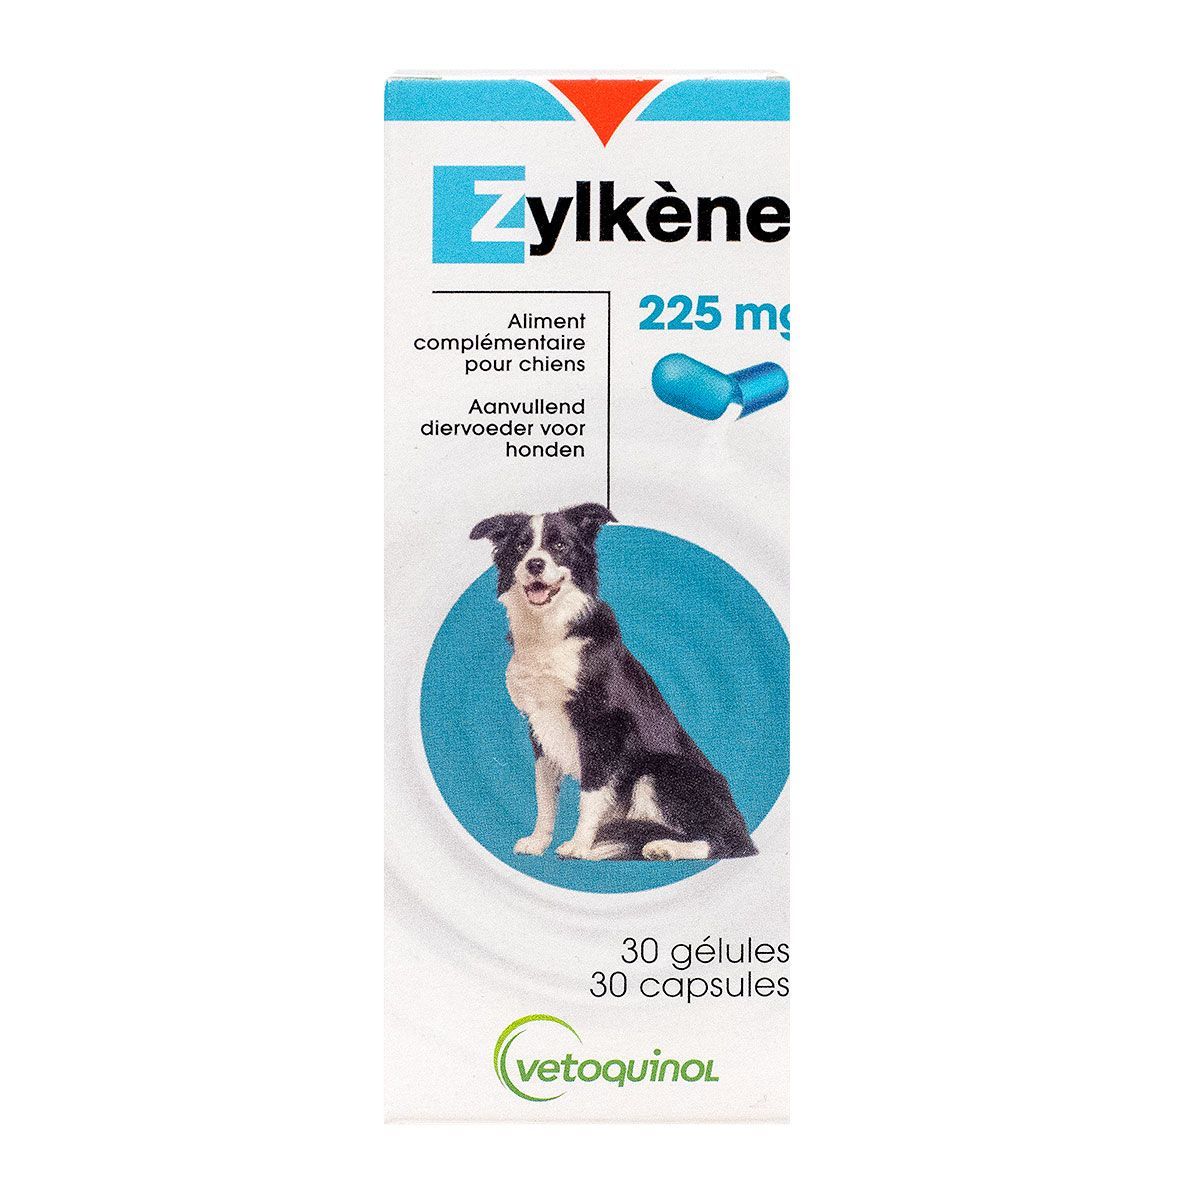 Zylkène est une solution 100% naturelle qui aide votre animal